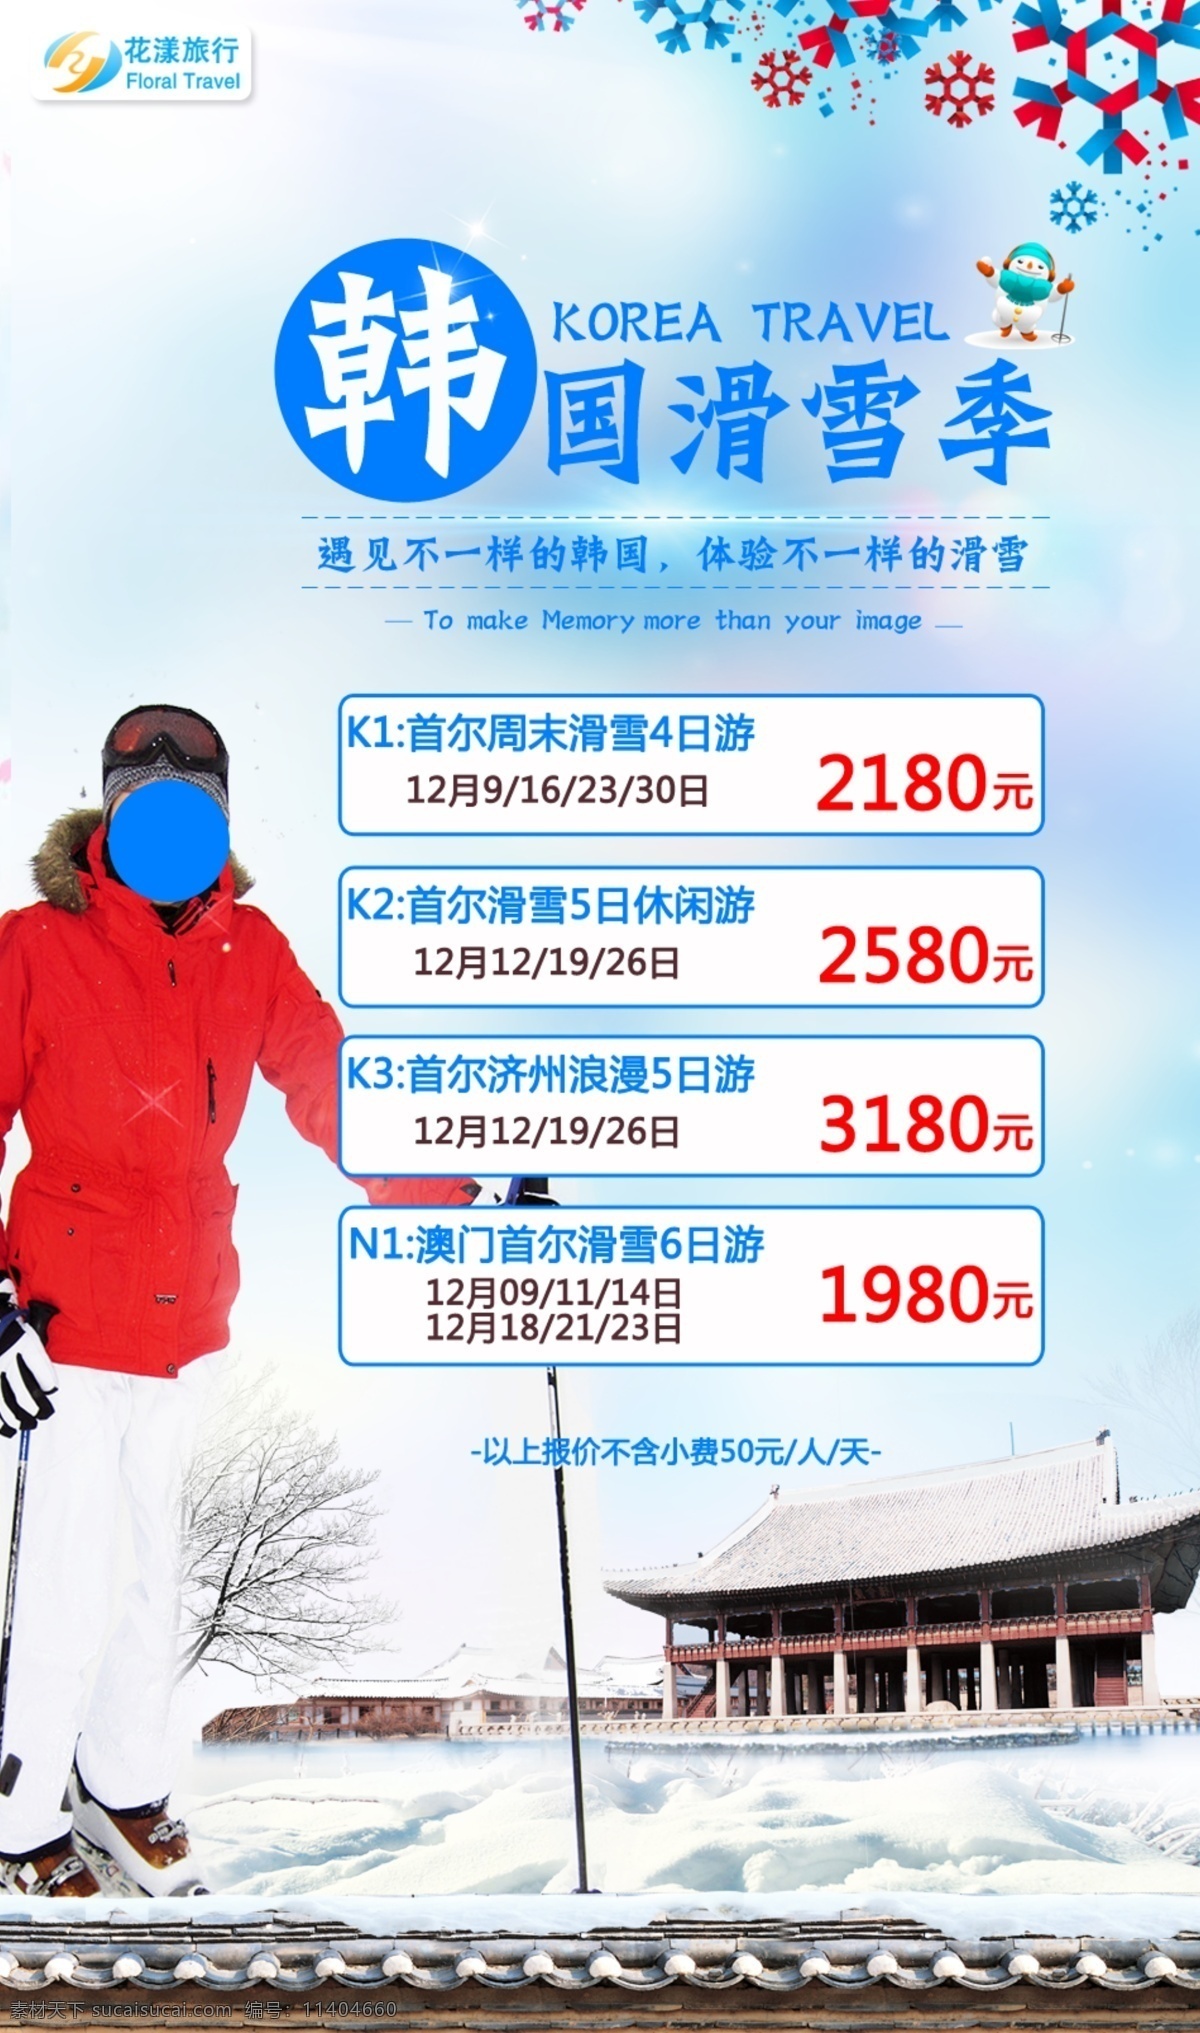 韩国 滑雪 旅游 海报 总编 首尔 滑雪人物 雪地 雪人 dm宣传单 雪橇 banner 冬天 雪景 雪花 七彩雪花 韩国建筑物